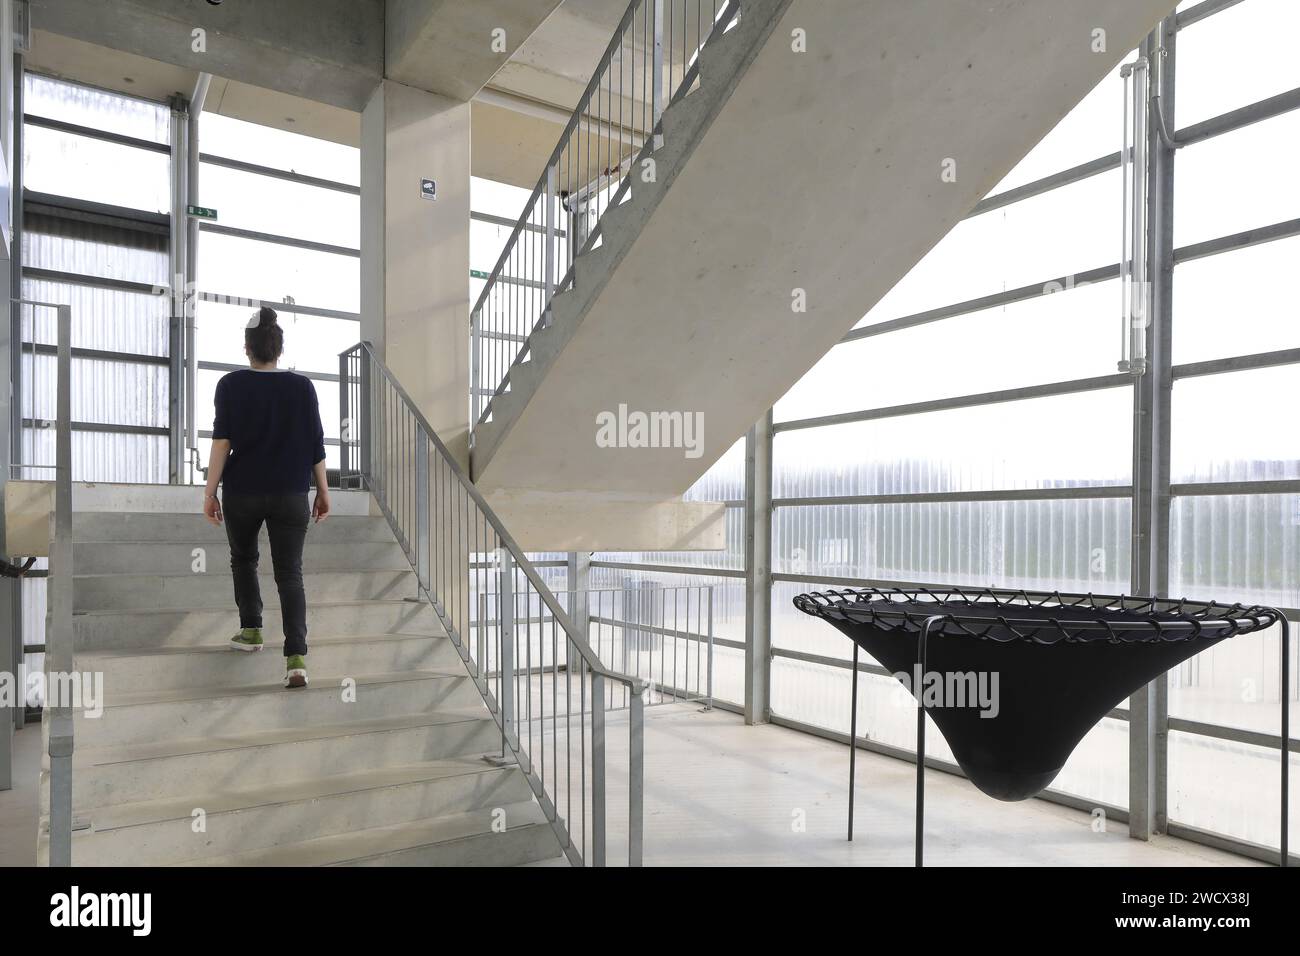 France, Nord, Dunkerque, FRAC Grand large / hauts-de-France conçu par les architectes Lacaton & vassal, escalier avec à droite une œuvre de l’artiste vénézuélien Angyvir Padilla Banque D'Images